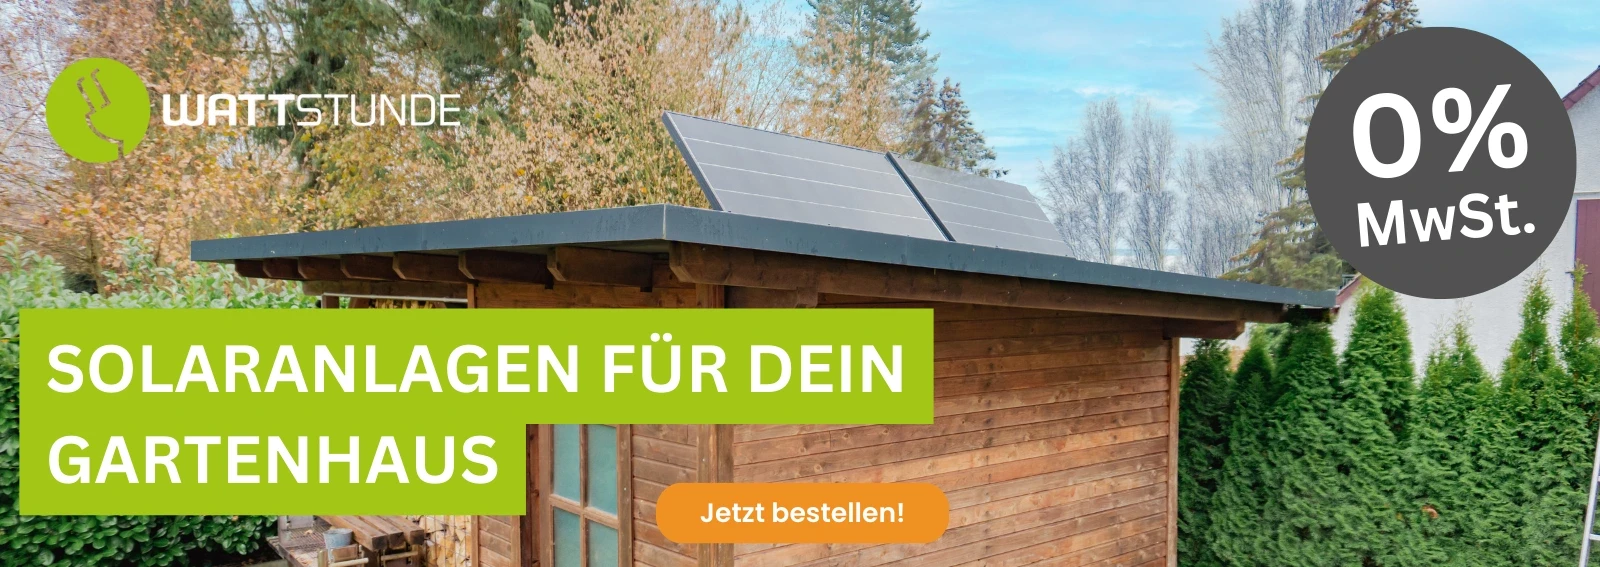 Wattstunde Solaranlagen für Gartenhäuser